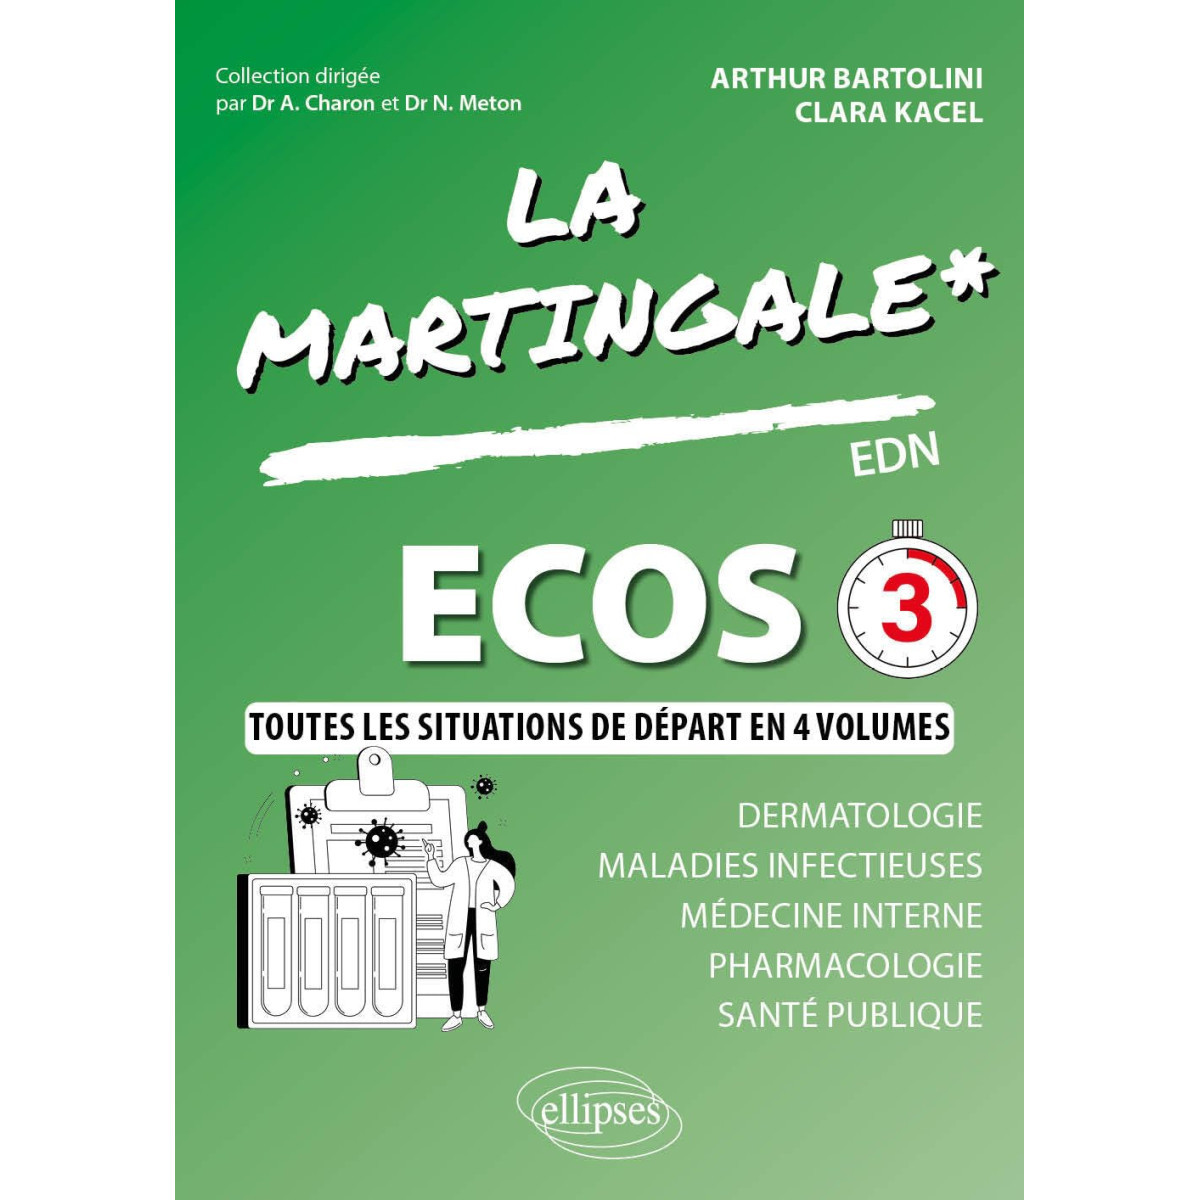 ECOS - Dermatologie - Maladie infectieuse - Médecine interne - Pharmacologie - Santé Publique